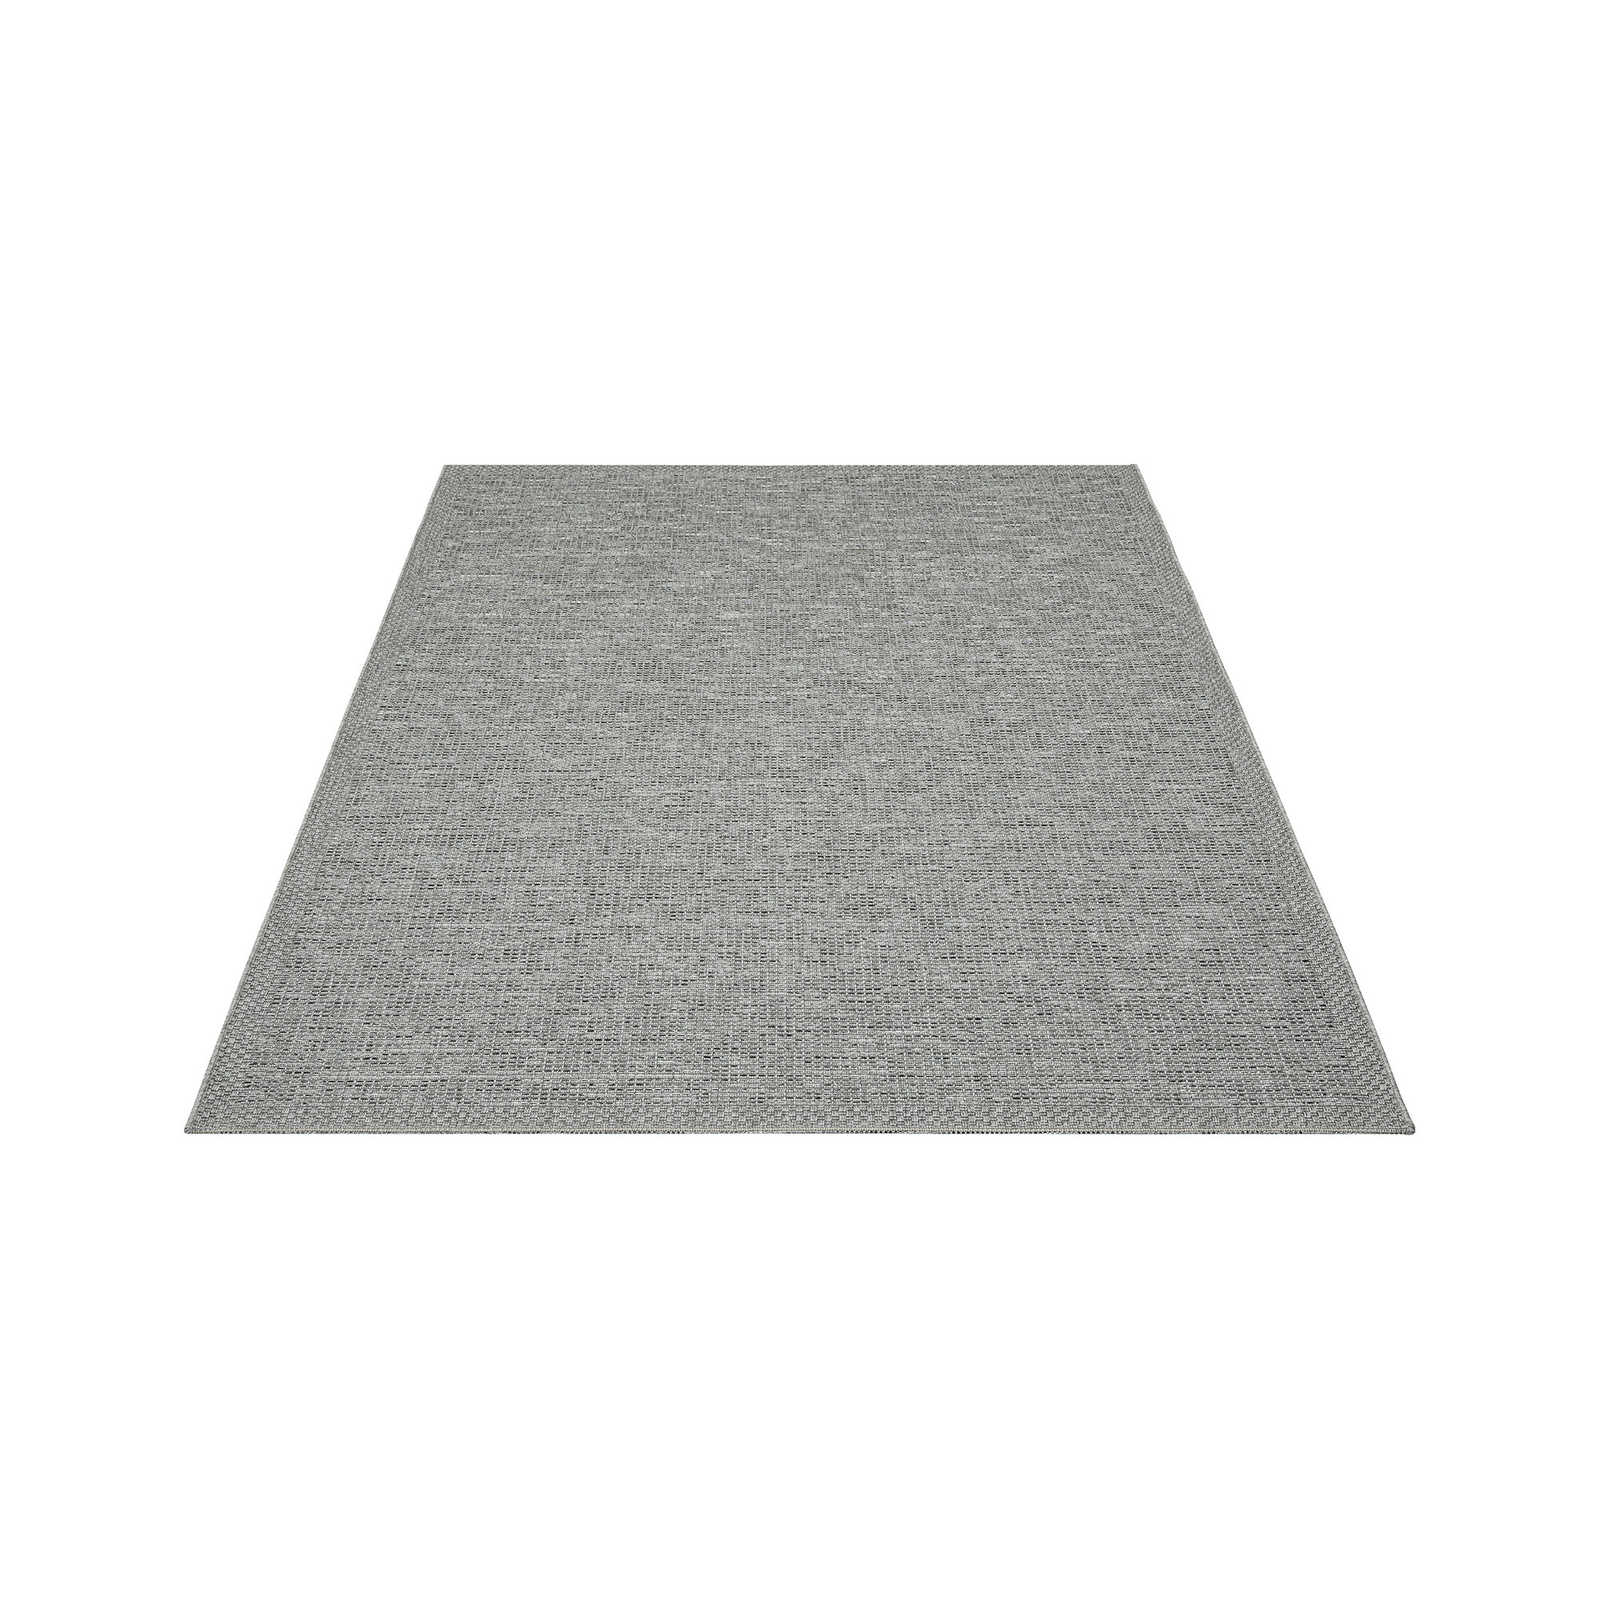 Schlichter Outdoor Teppich in Grau – 220 x 160 cm
